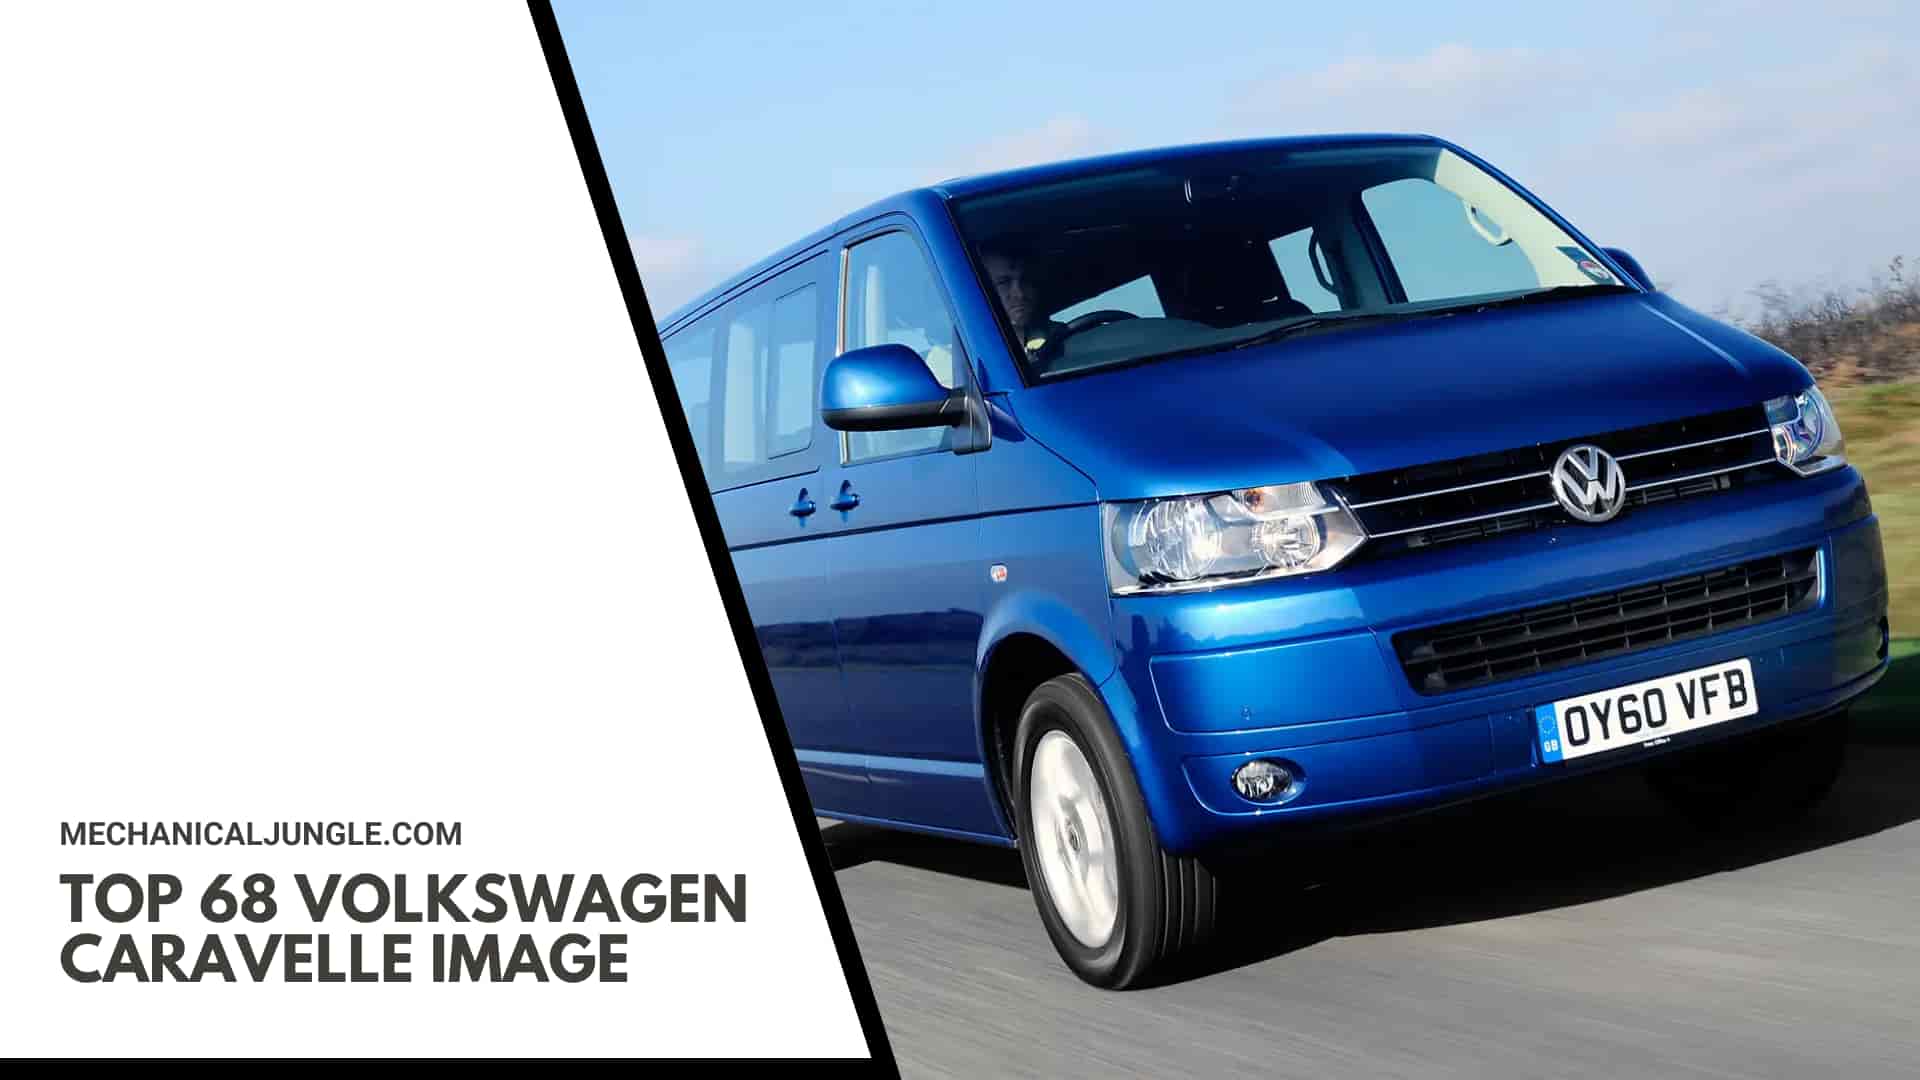 Top 68 Volkswagen Caravelle Image